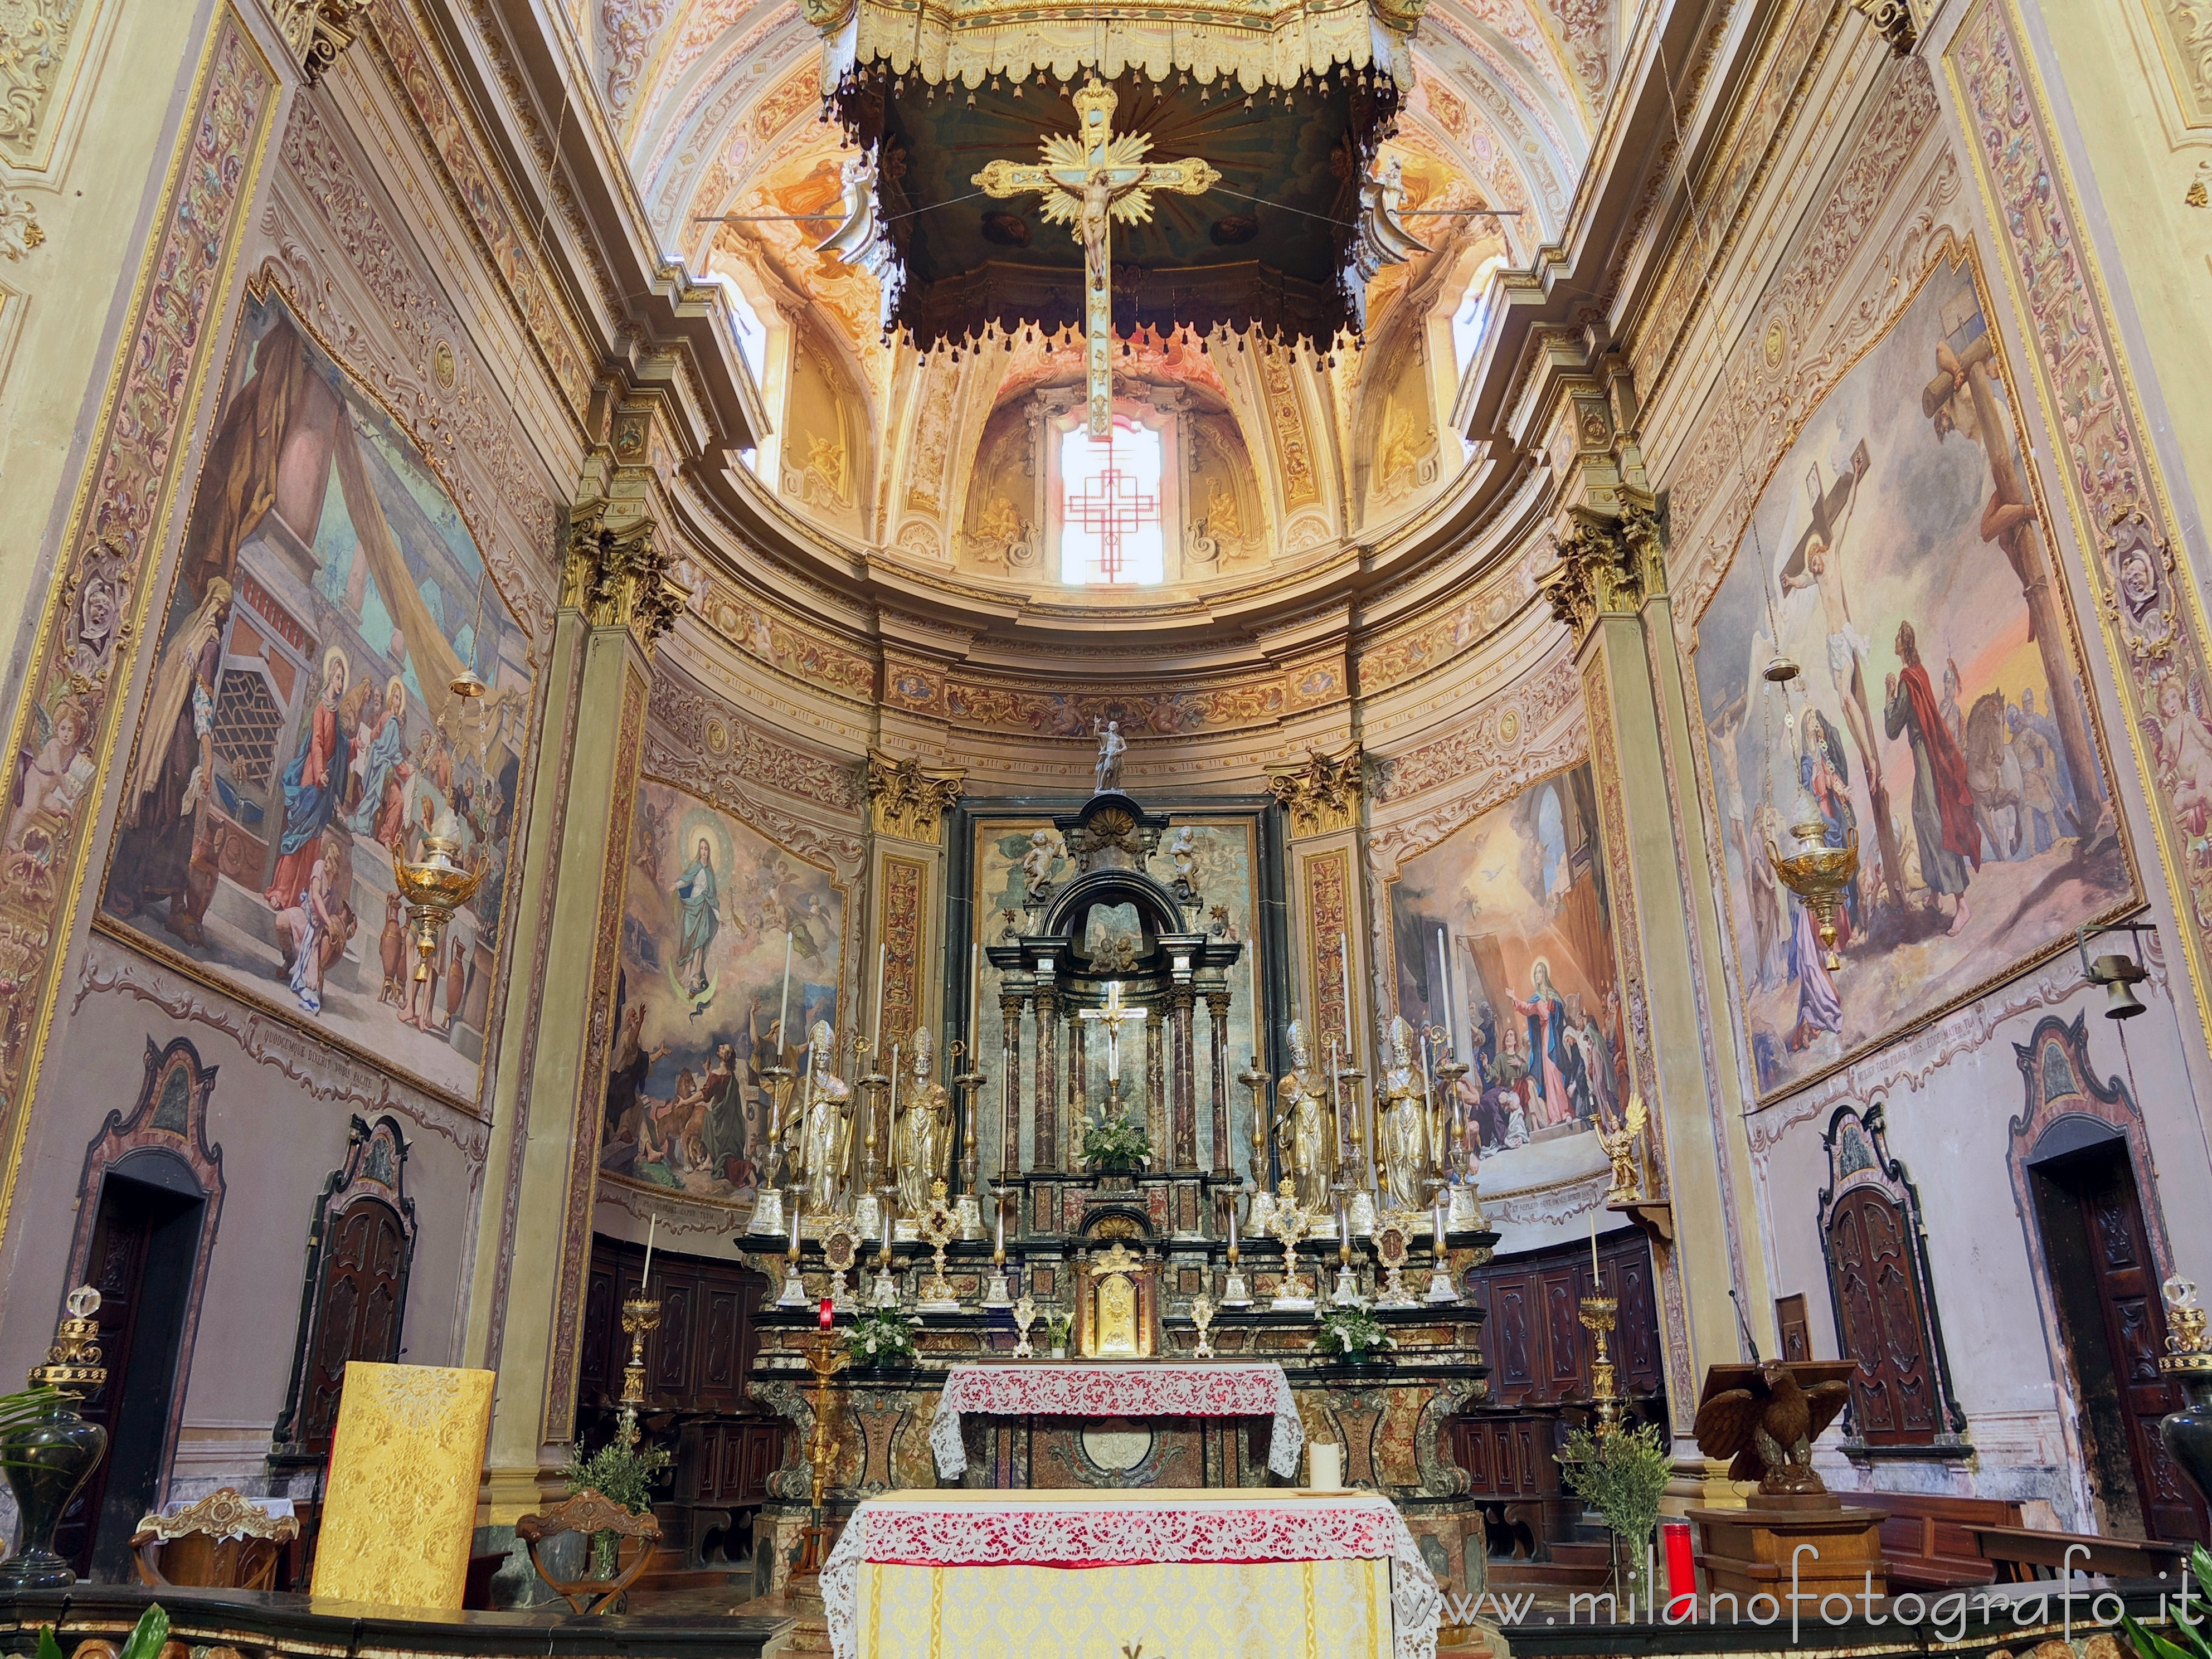 Carpignano Sesia (Novara, Italy): Presbytery of the Church of Santa Maria Assunta - Carpignano Sesia (Novara, Italy)